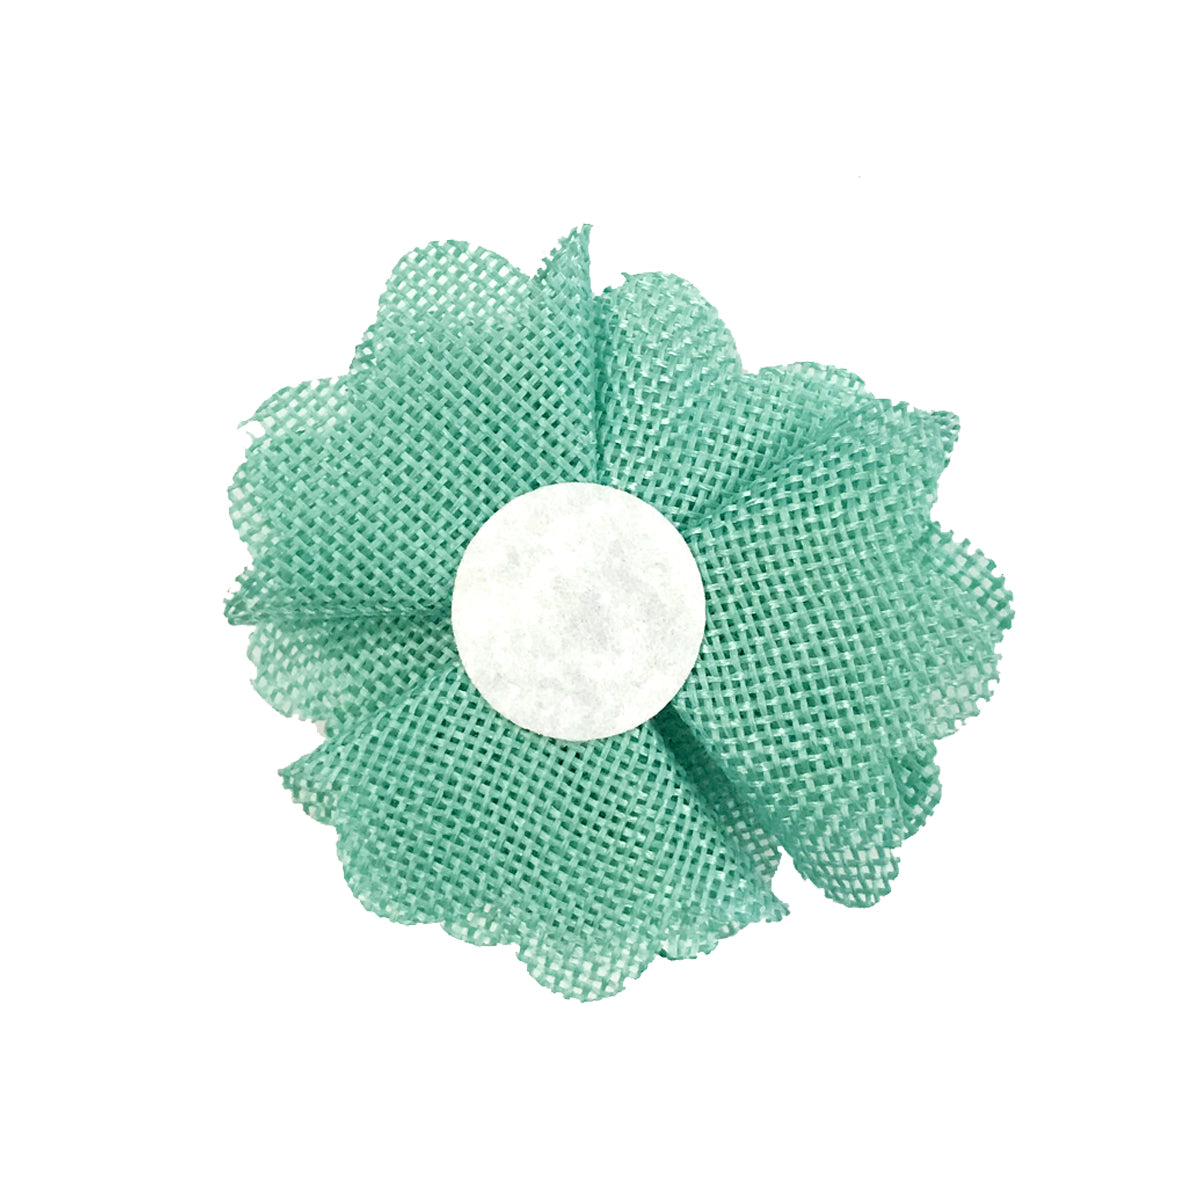 Wrapables Shabby Chic Burlap Rose Flower 3 Inch Diameter (Set of 12)